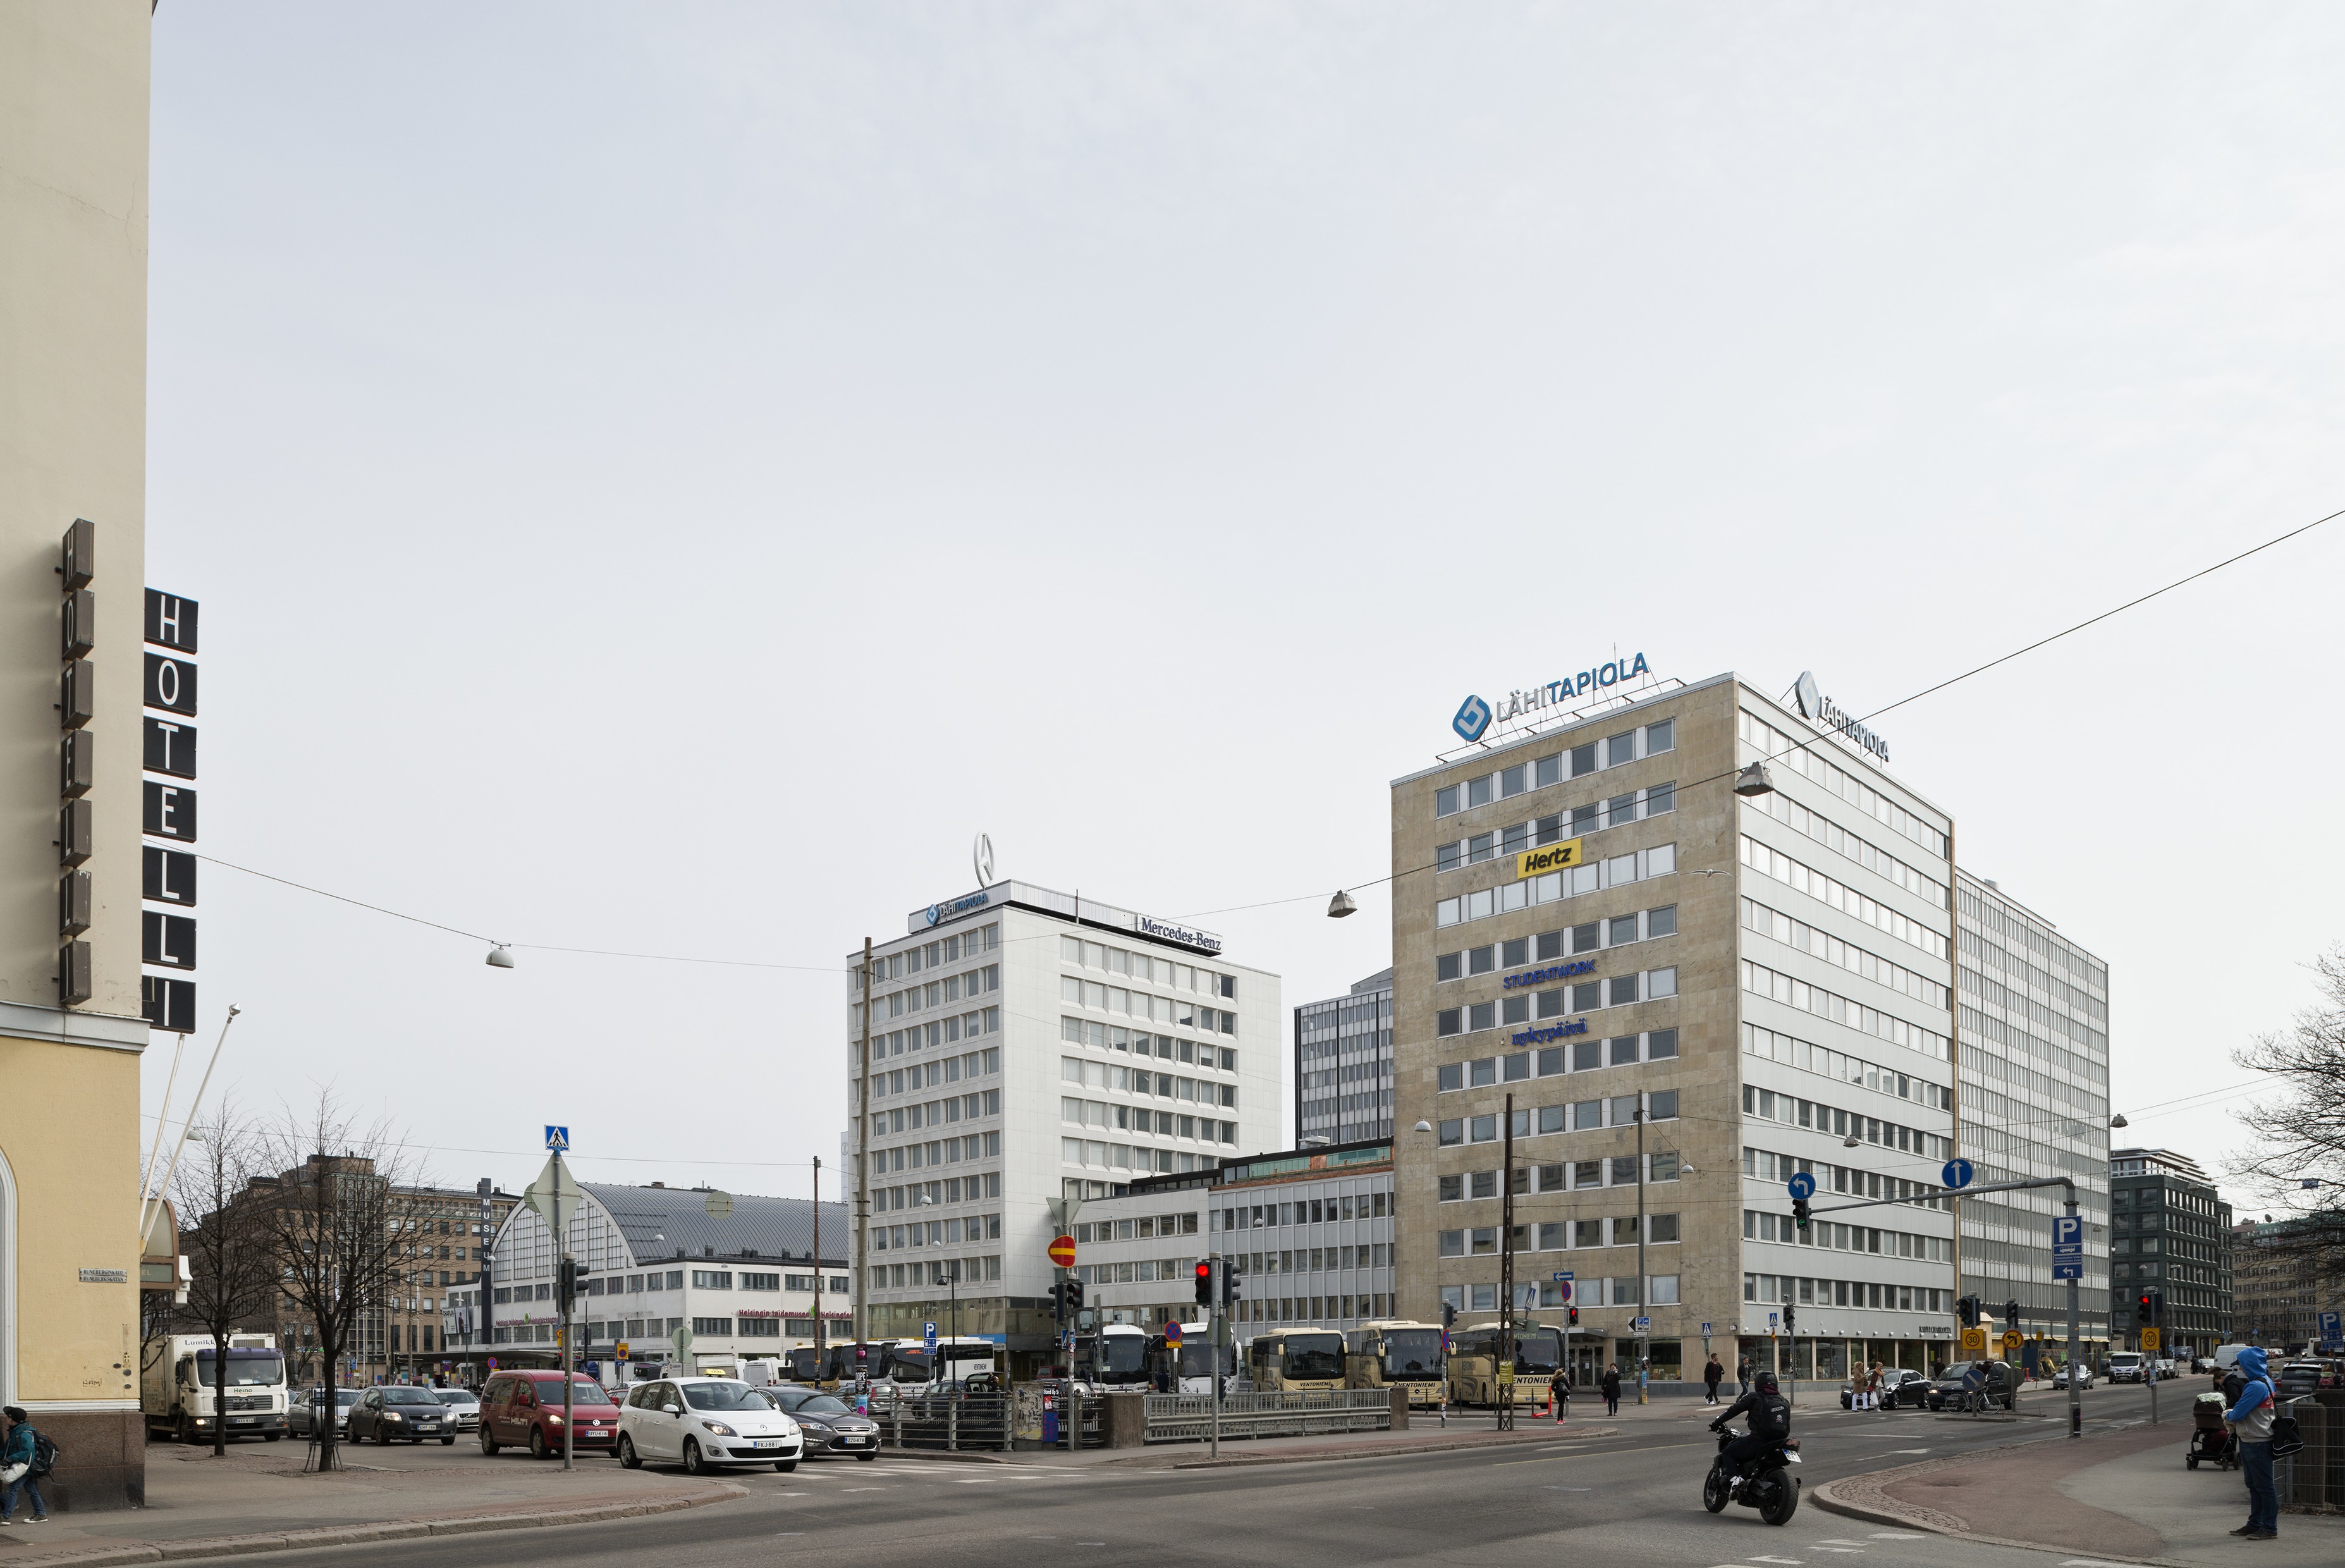 Ent. Pohjantalo, Runeberginkatu 5. Arkkitehti Armas Lehtinen, 1958. Taustalla vasemmalla Fredrikinkatu 48 ja Tennispalatsi. City-inventointi.